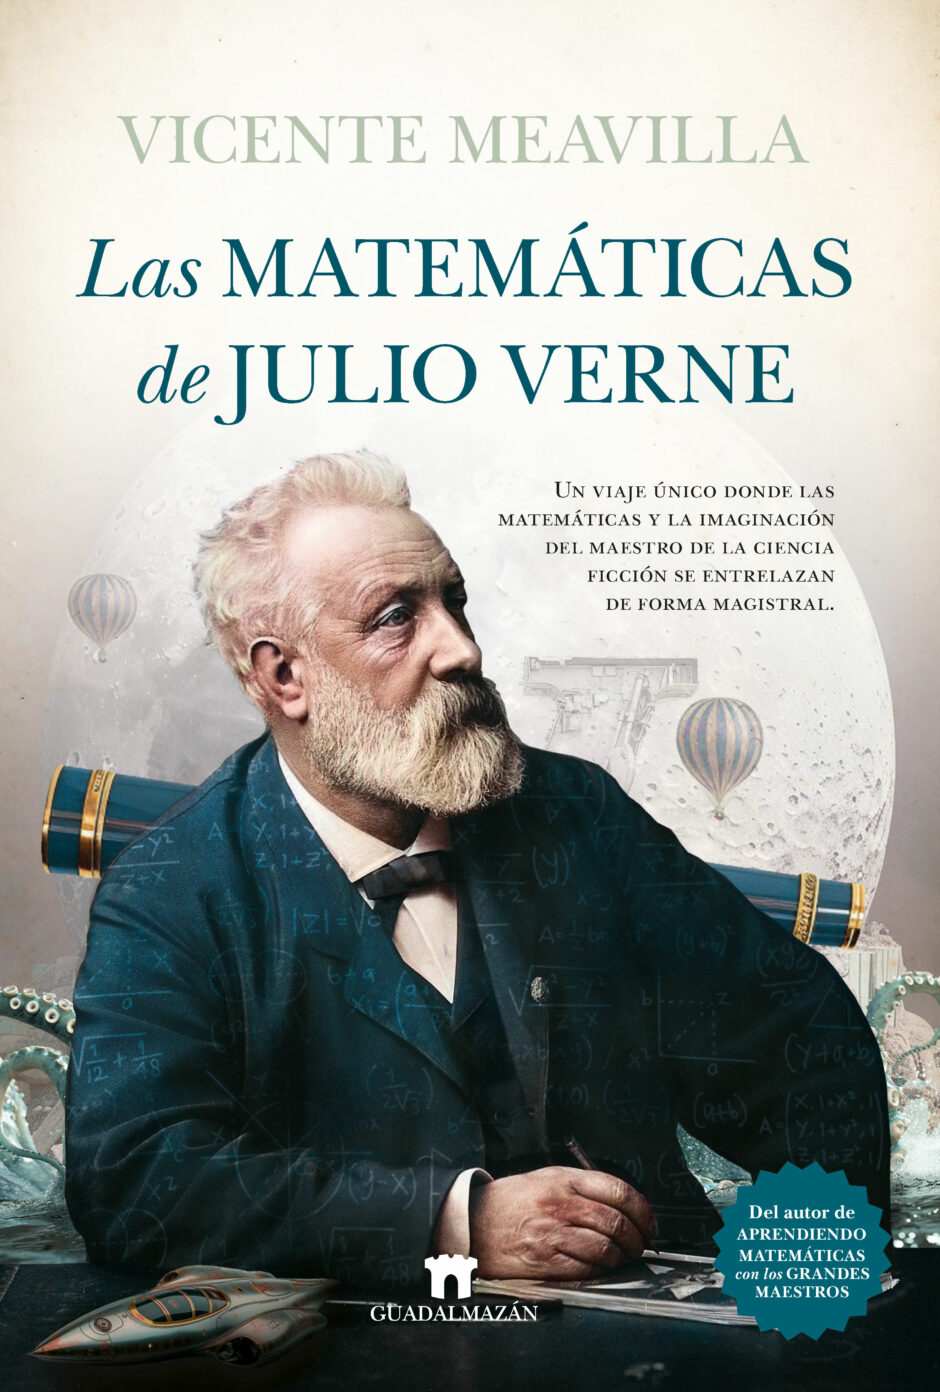 ¿Qué influencia tienen las matemáticas en las obras de Julio Verne? Vicente Meavilla lo explica en su nuevo libro